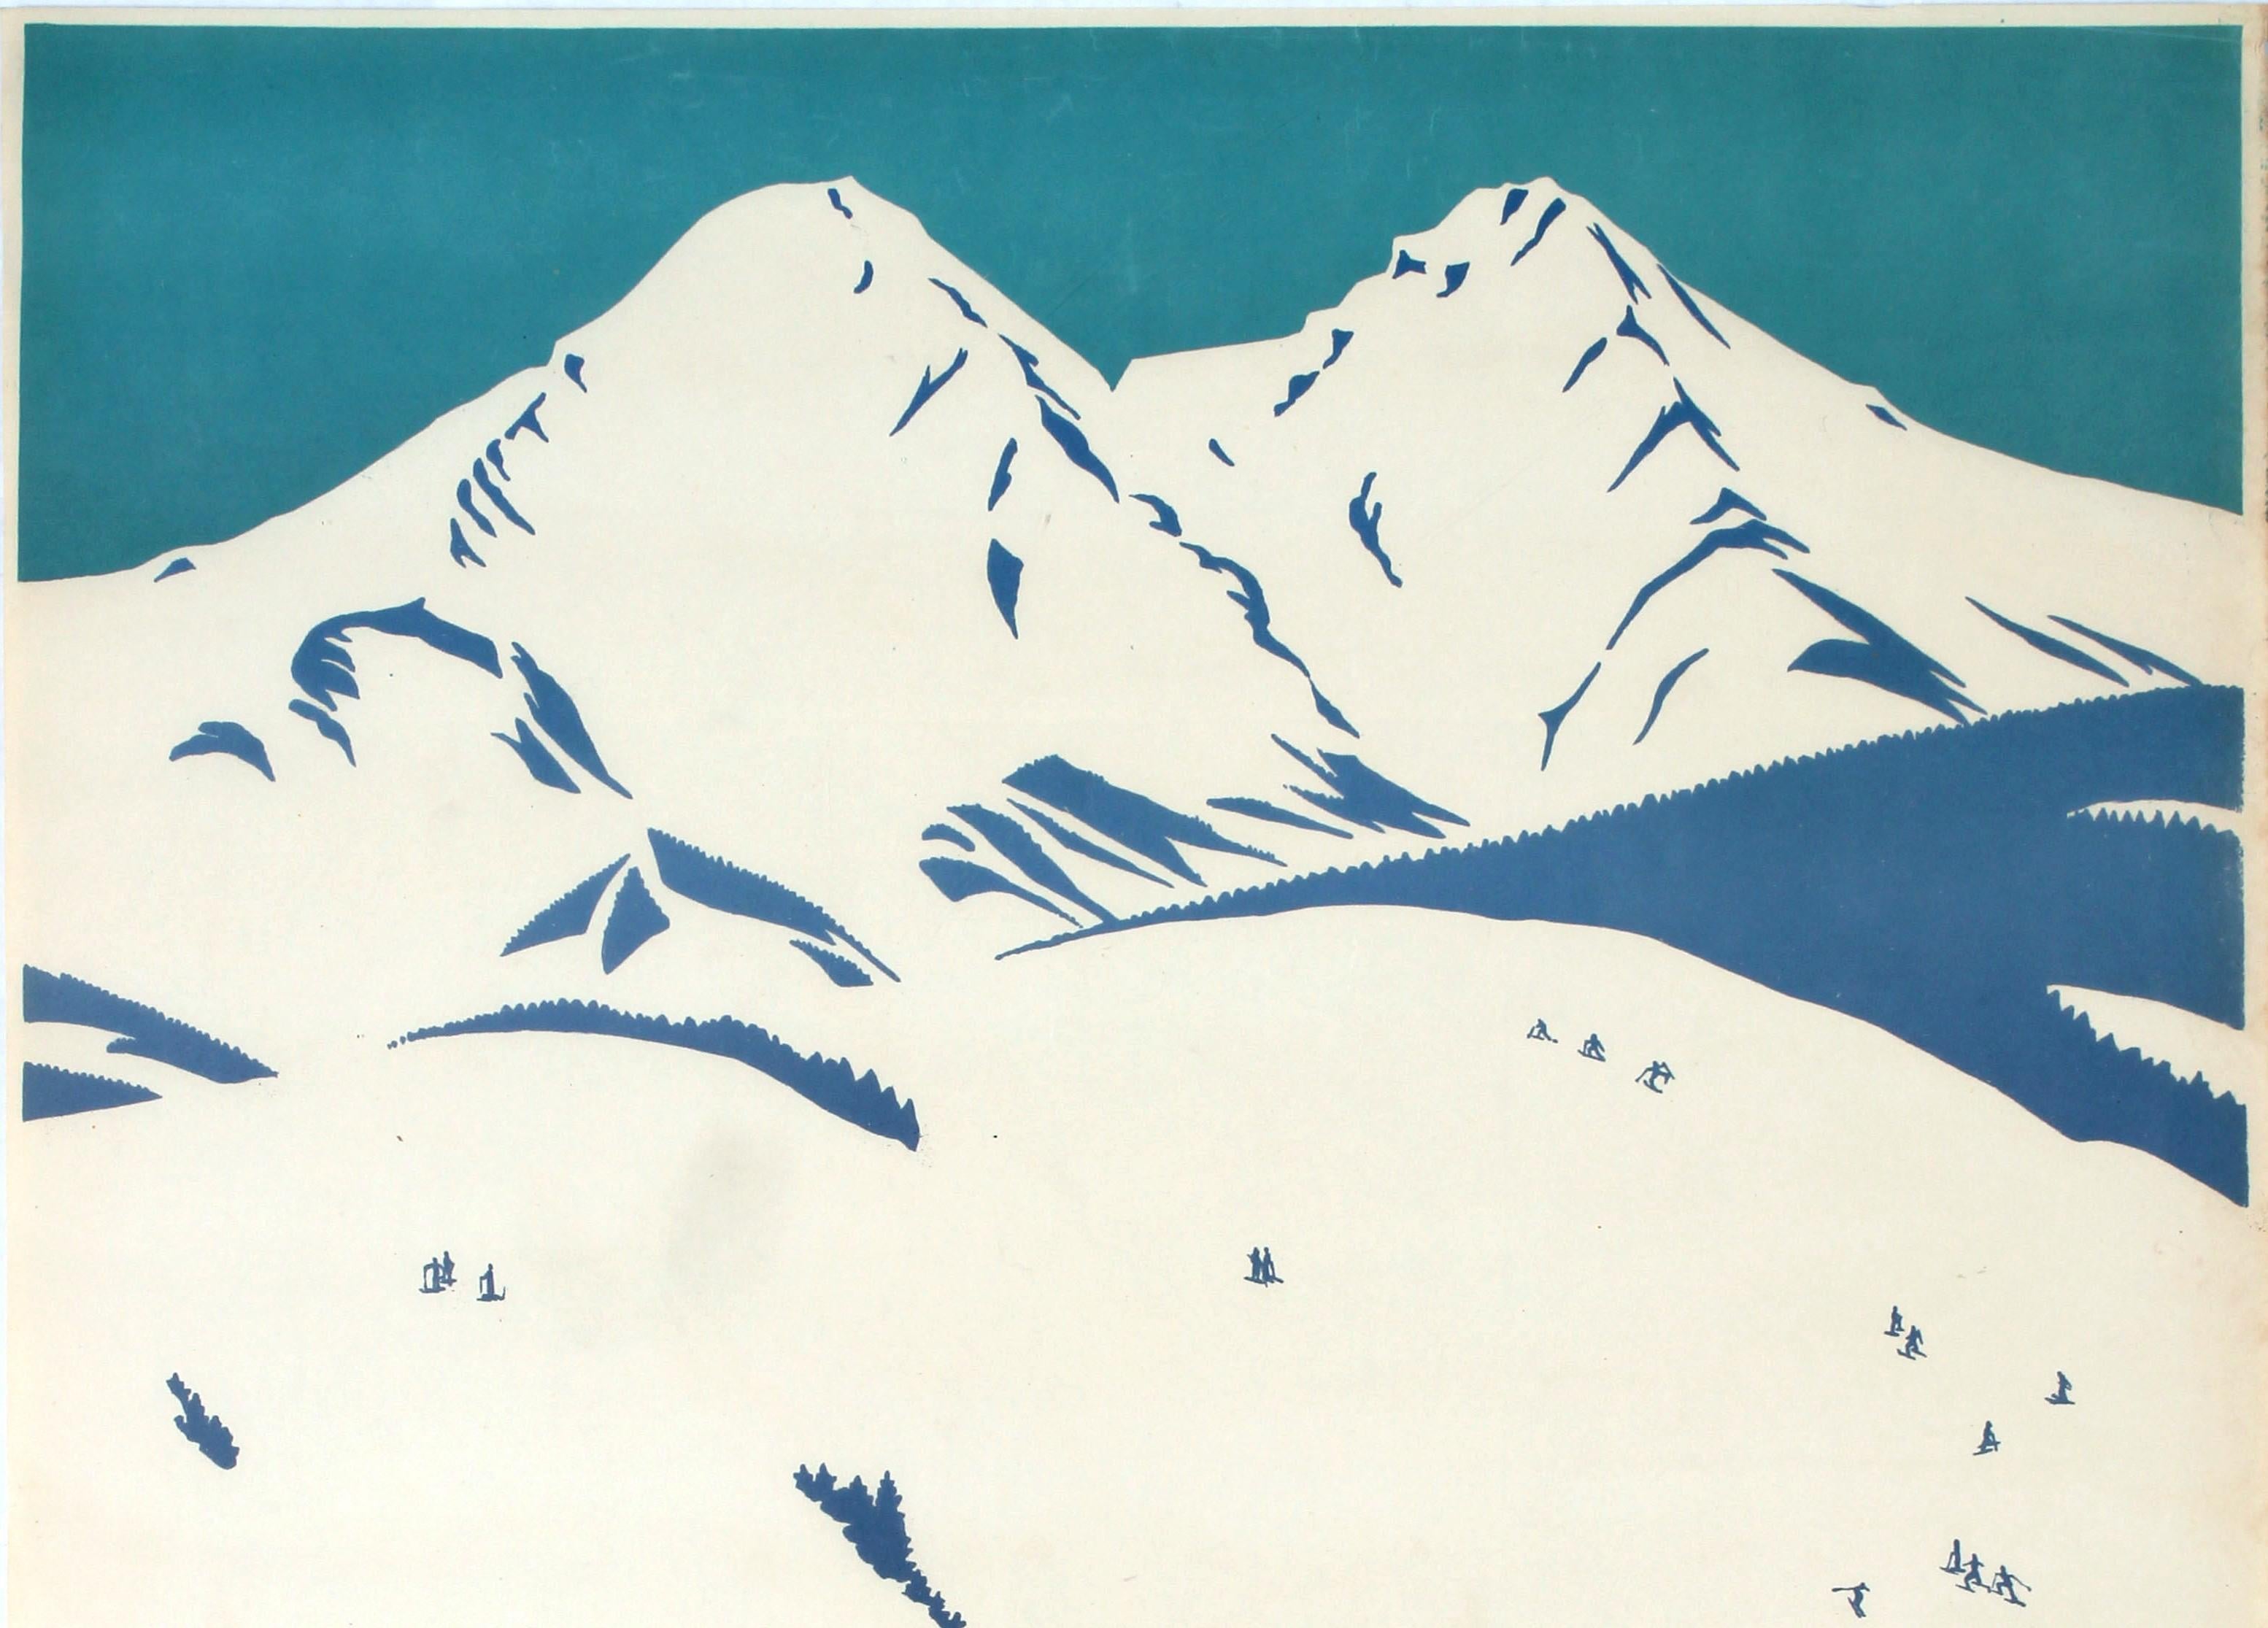 Original Vintage Winter Sports Ski Poster Hohe Tatra High Tatras Czechoslovakia - Print by Neuzil